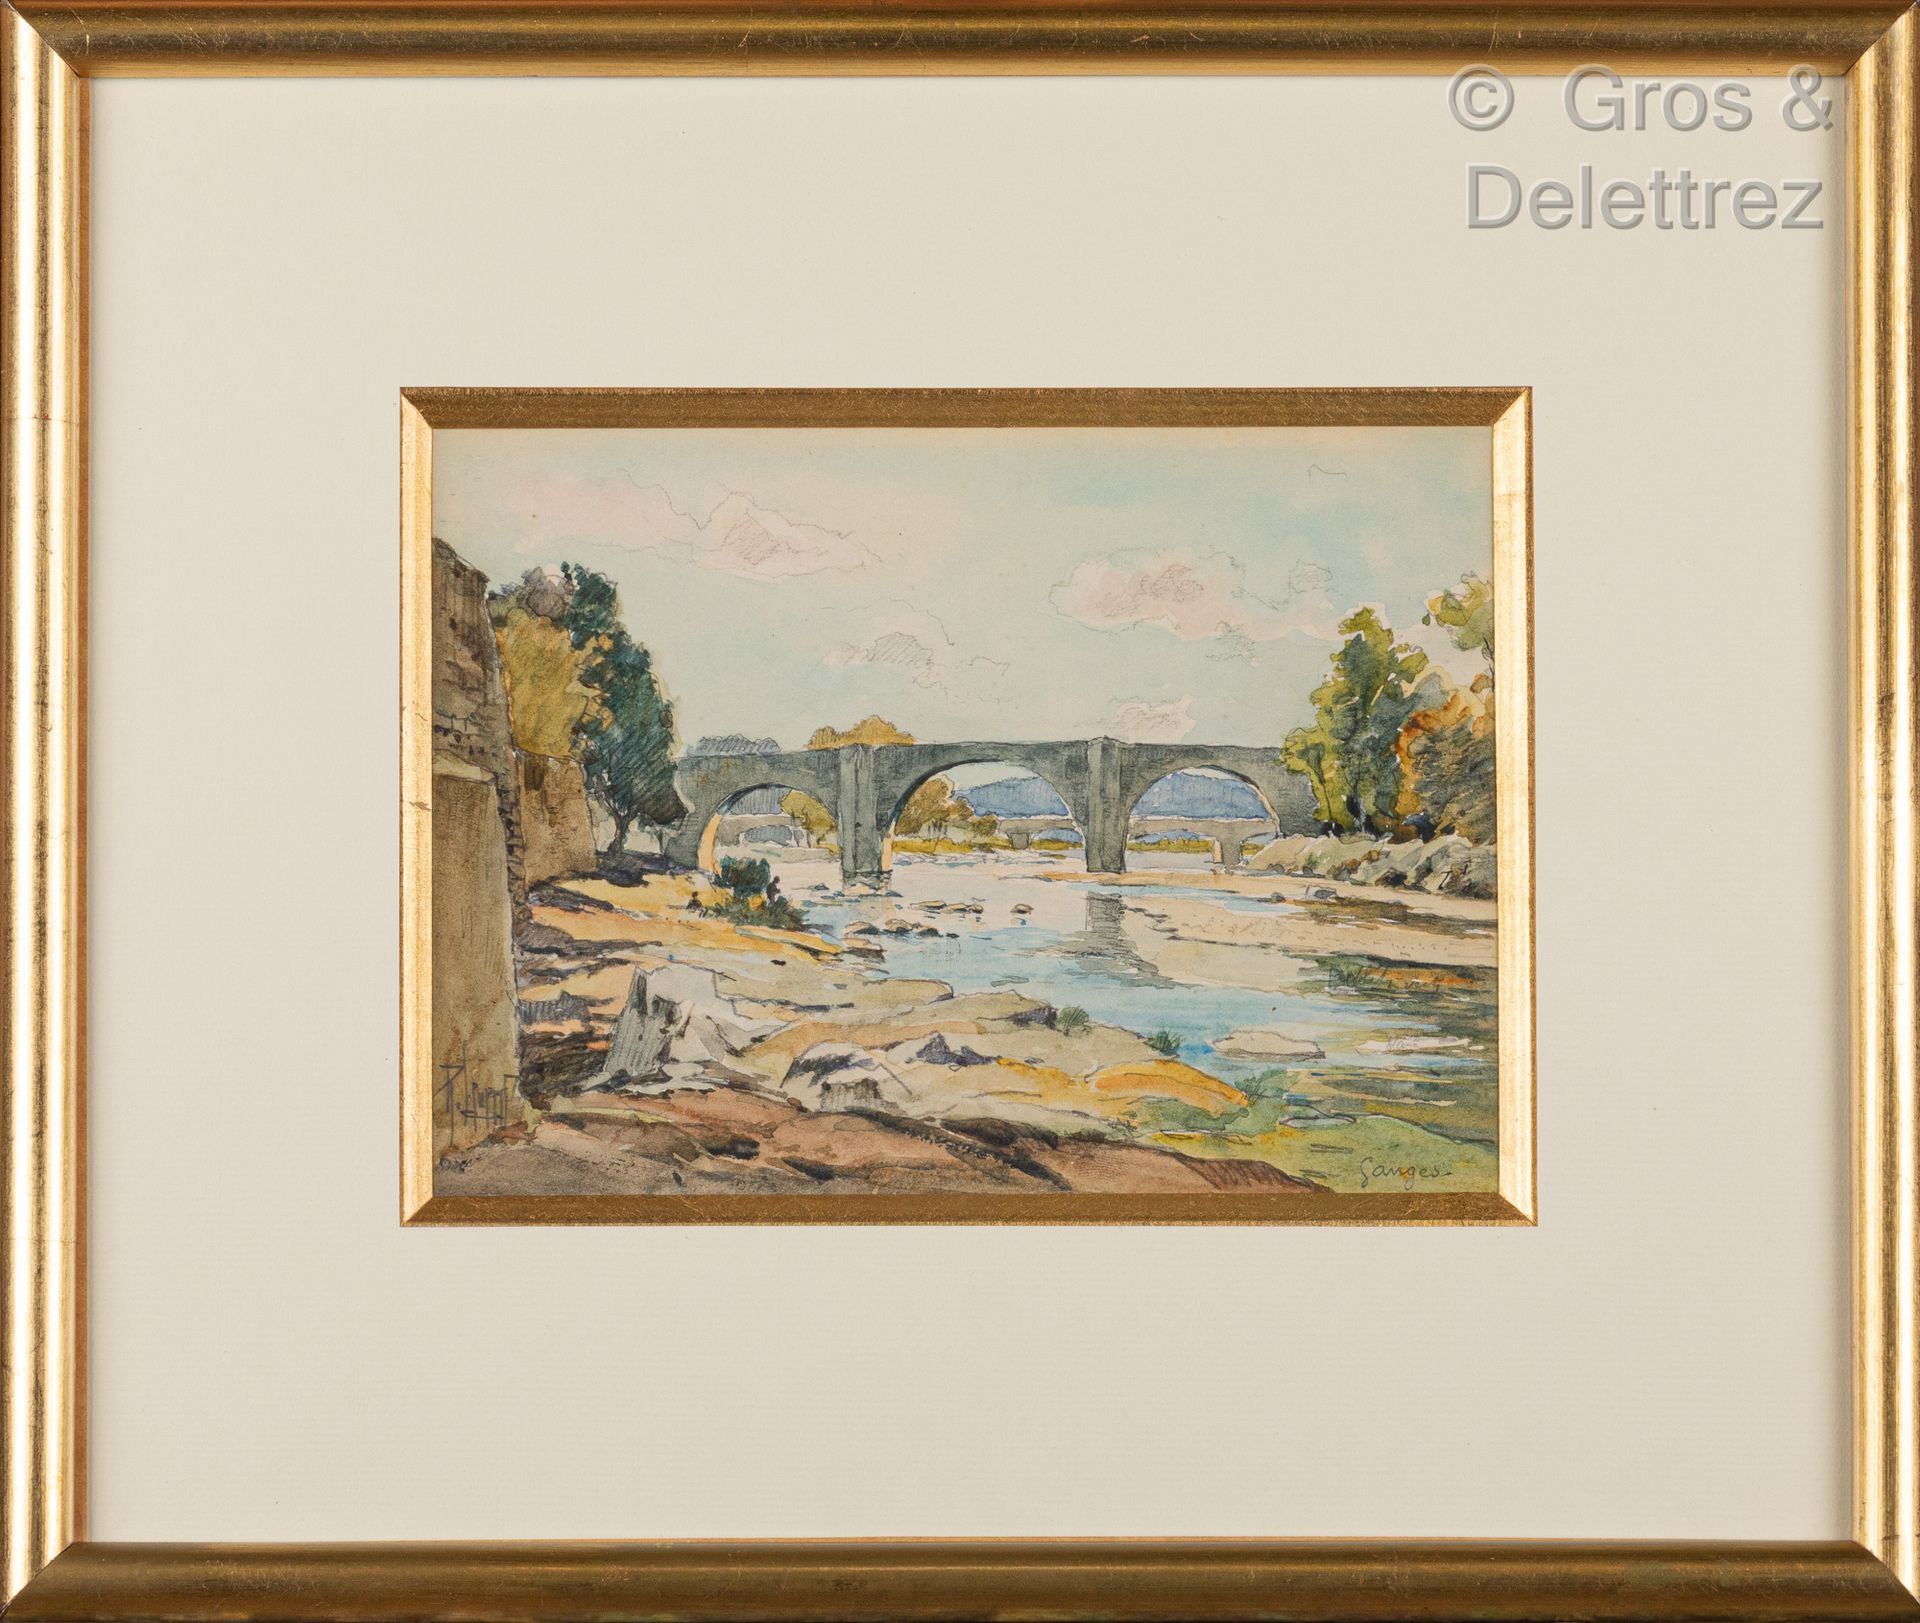 Null 勒内-莱维德 (1872-1938)

恒河的桥

水彩和铅笔画，左下角有签名，位于右下角

13 x 18 cm at sight